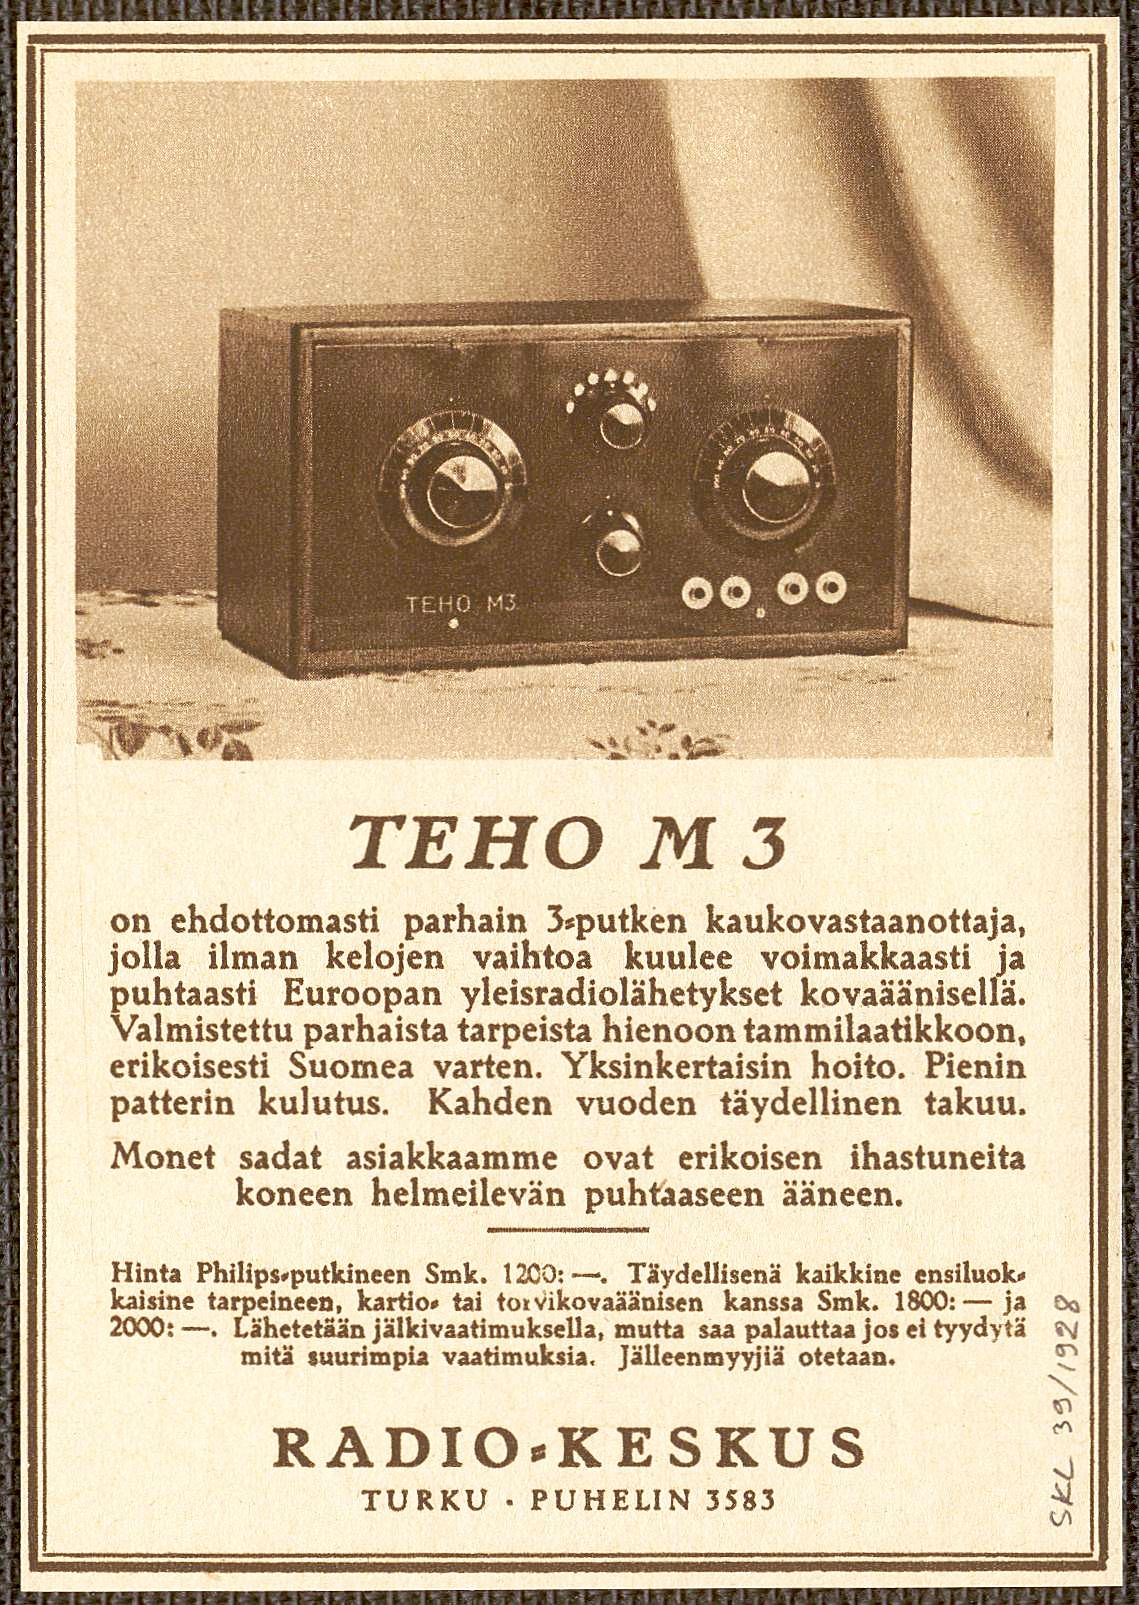 Teho_M3_-_Radio-Keskus__Turku___-Suomen_kuvalehti_1928-39.jpg